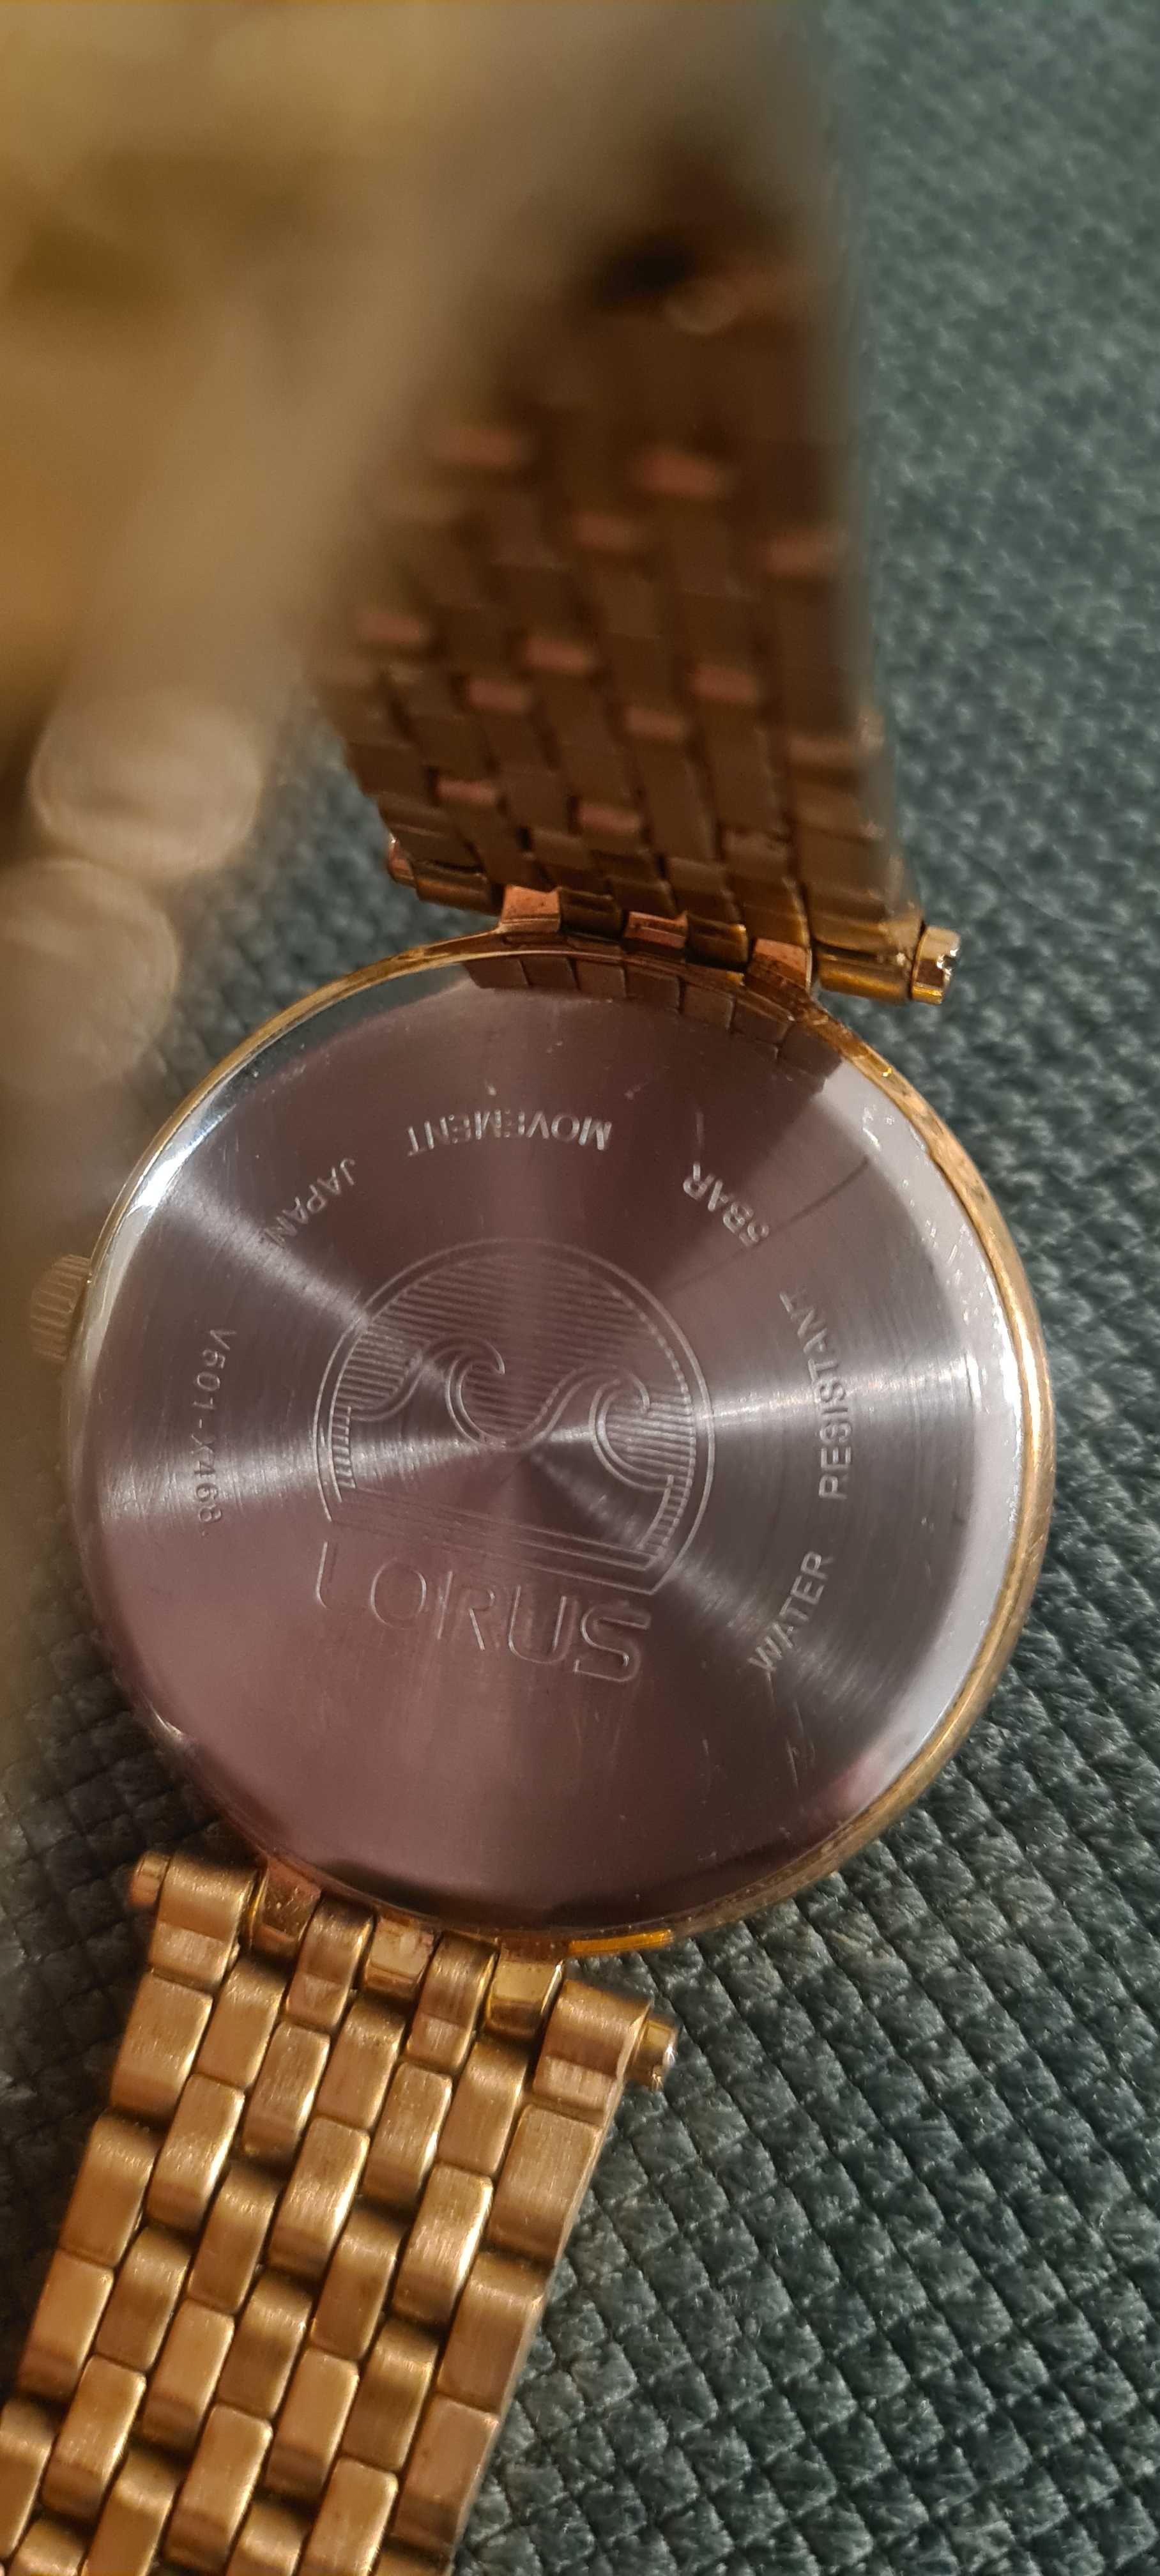 Elegancki zegarek damski Lorus, bransoleta, różowe złoto